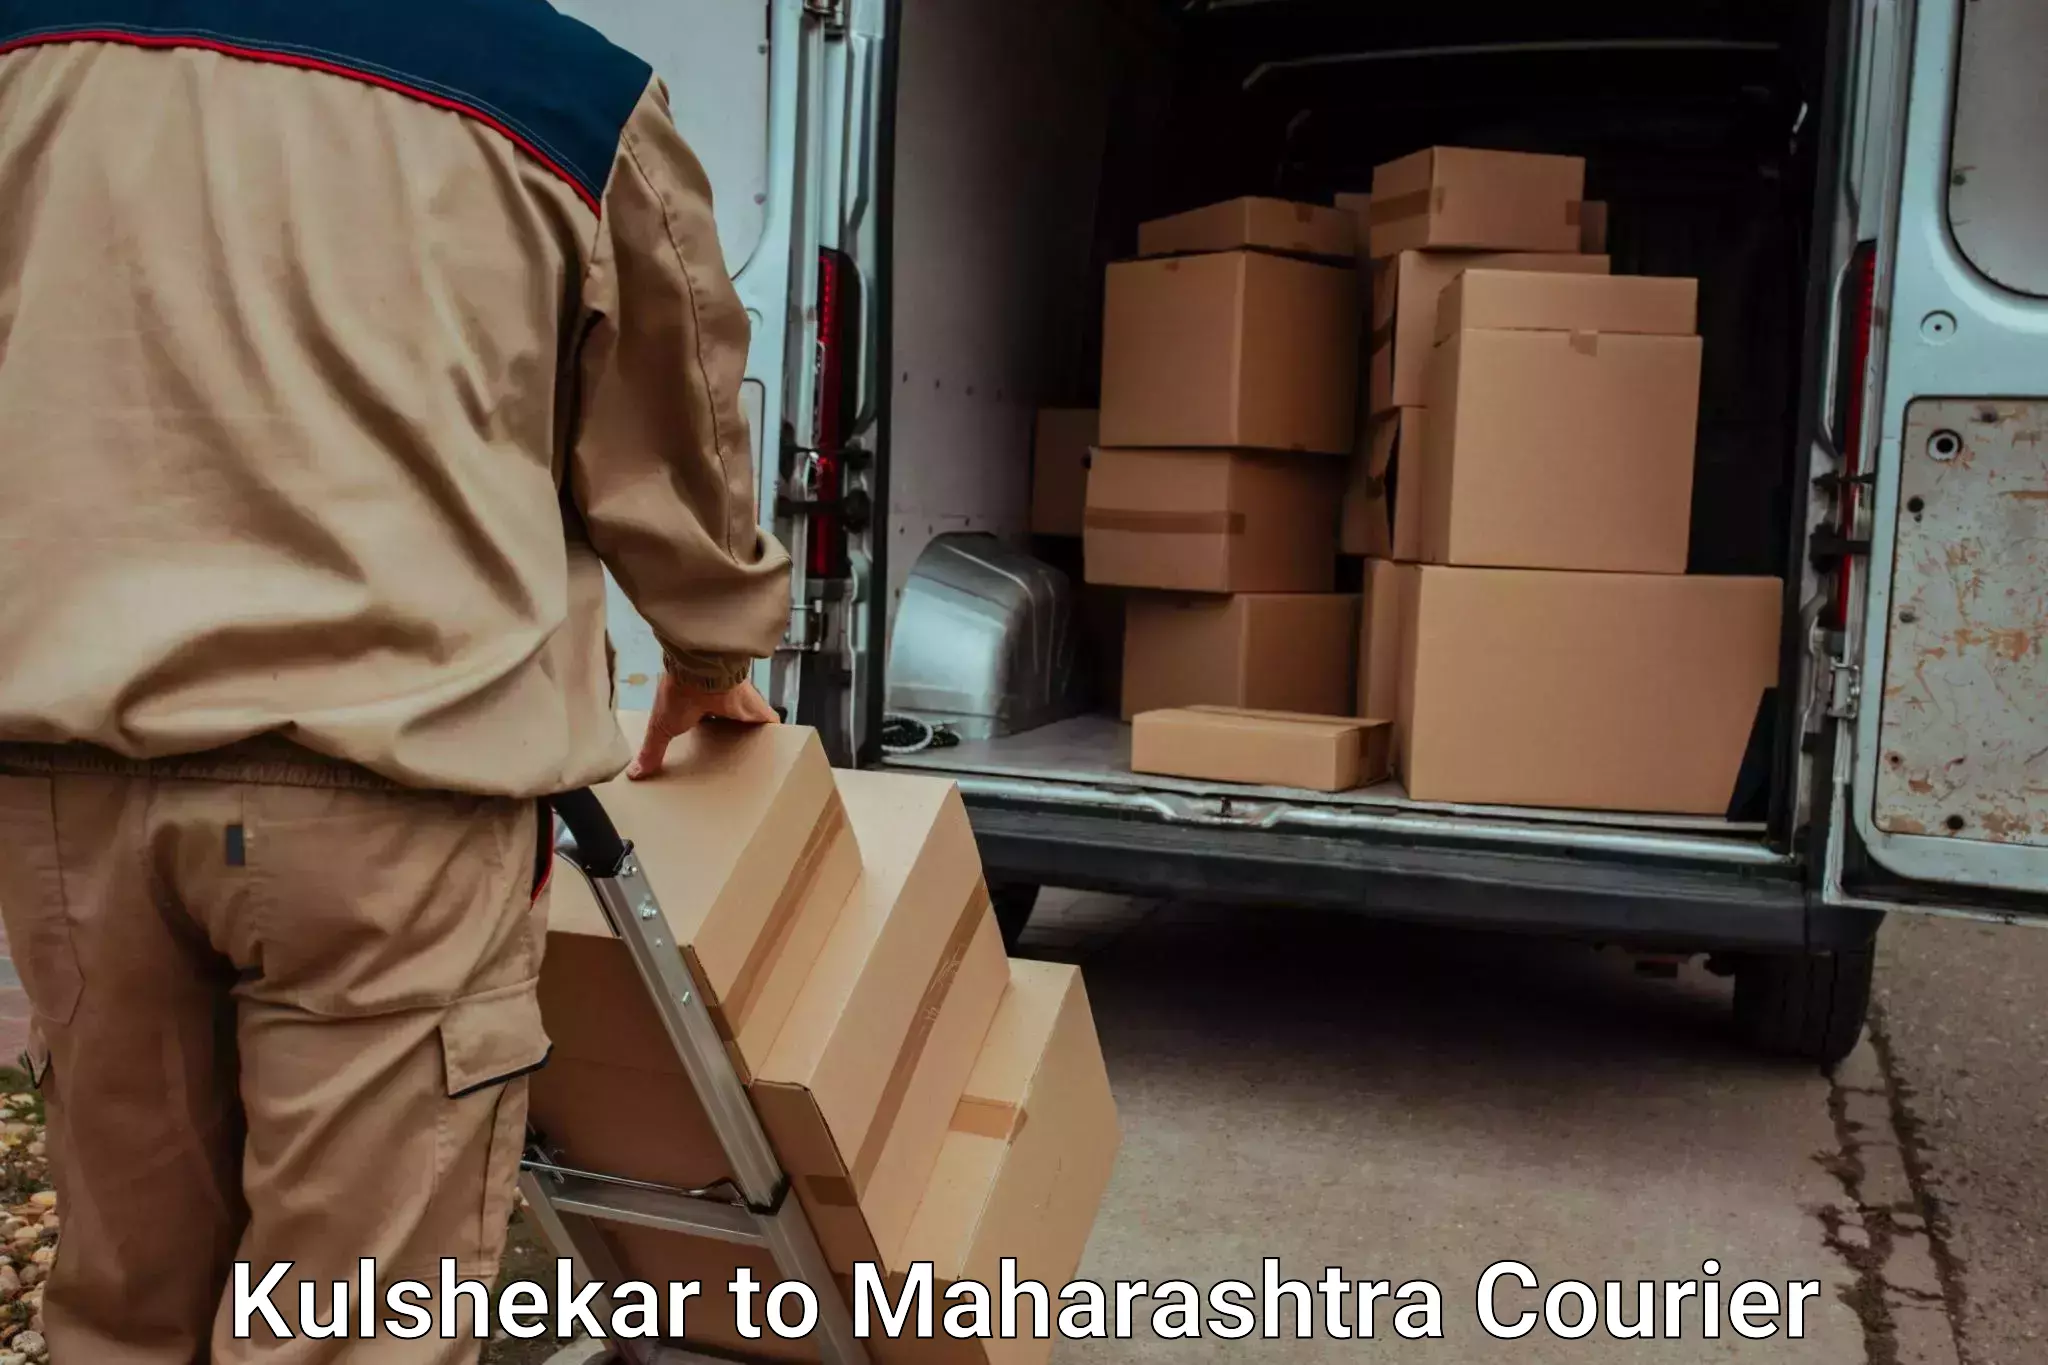 Trusted moving company Kulshekar to Homi Bhabha National Institute Mumbai